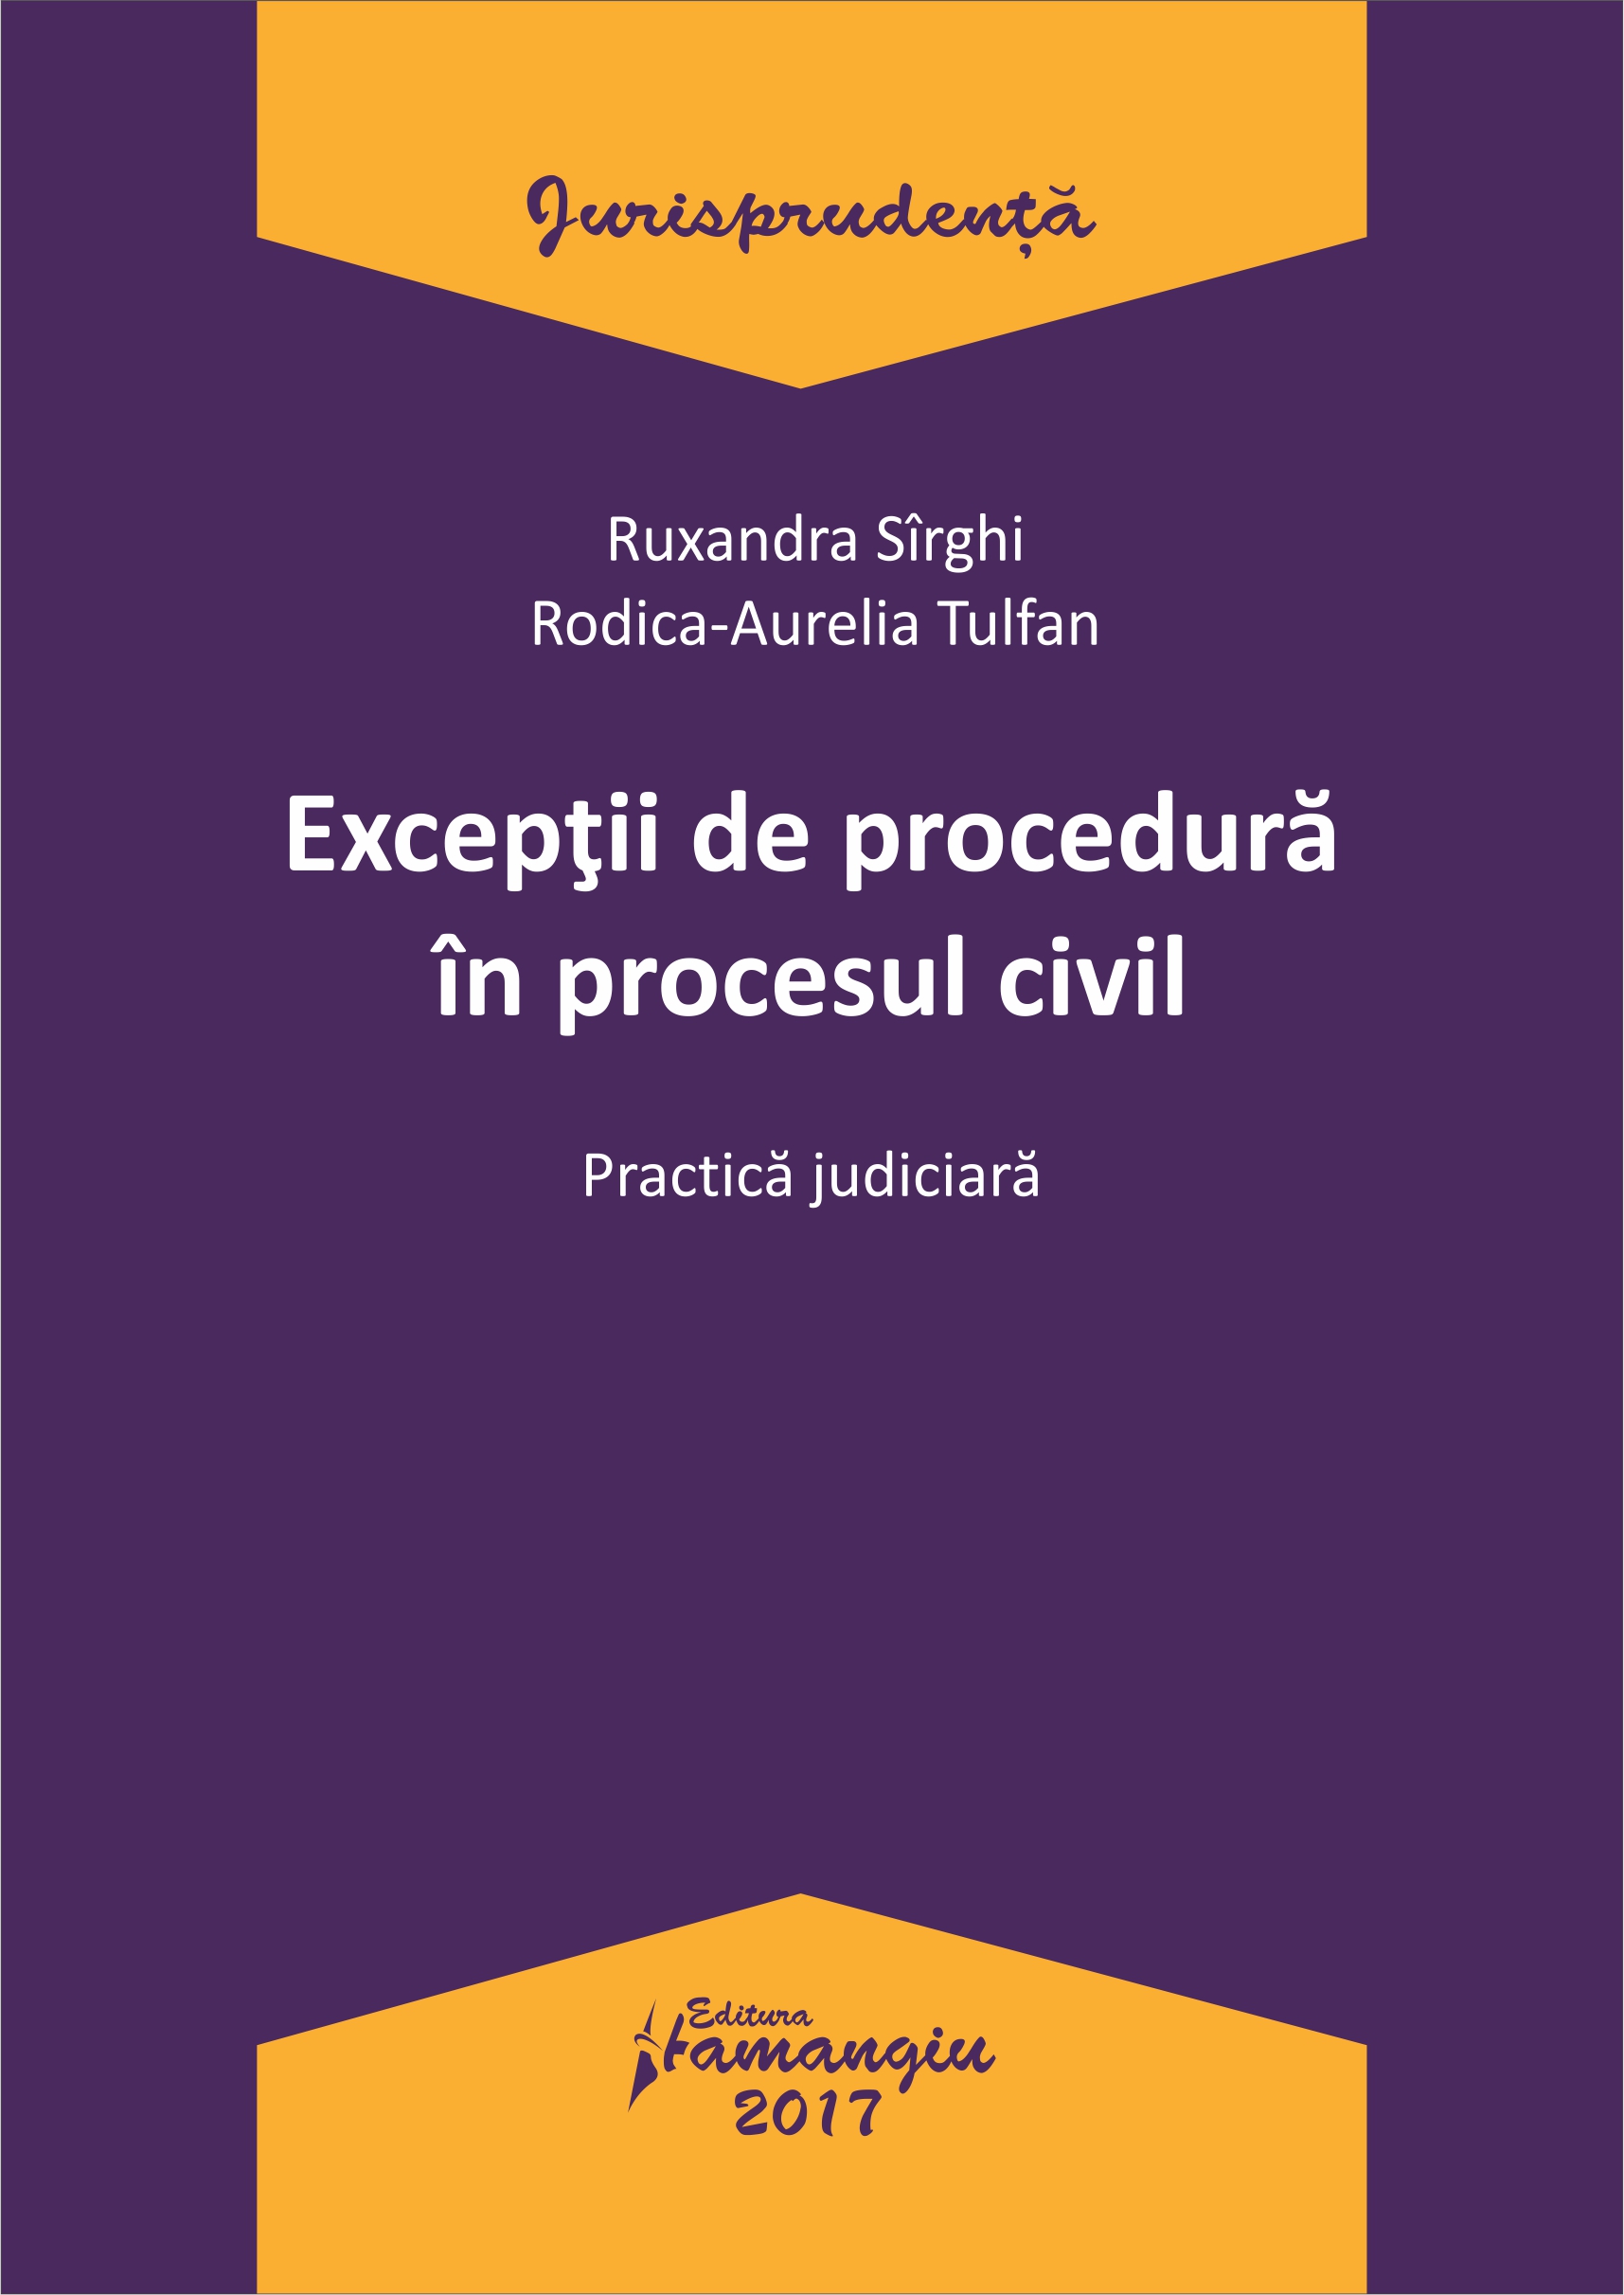 Exceptii de procedura in procesul civil - Ruxandra Sirghi